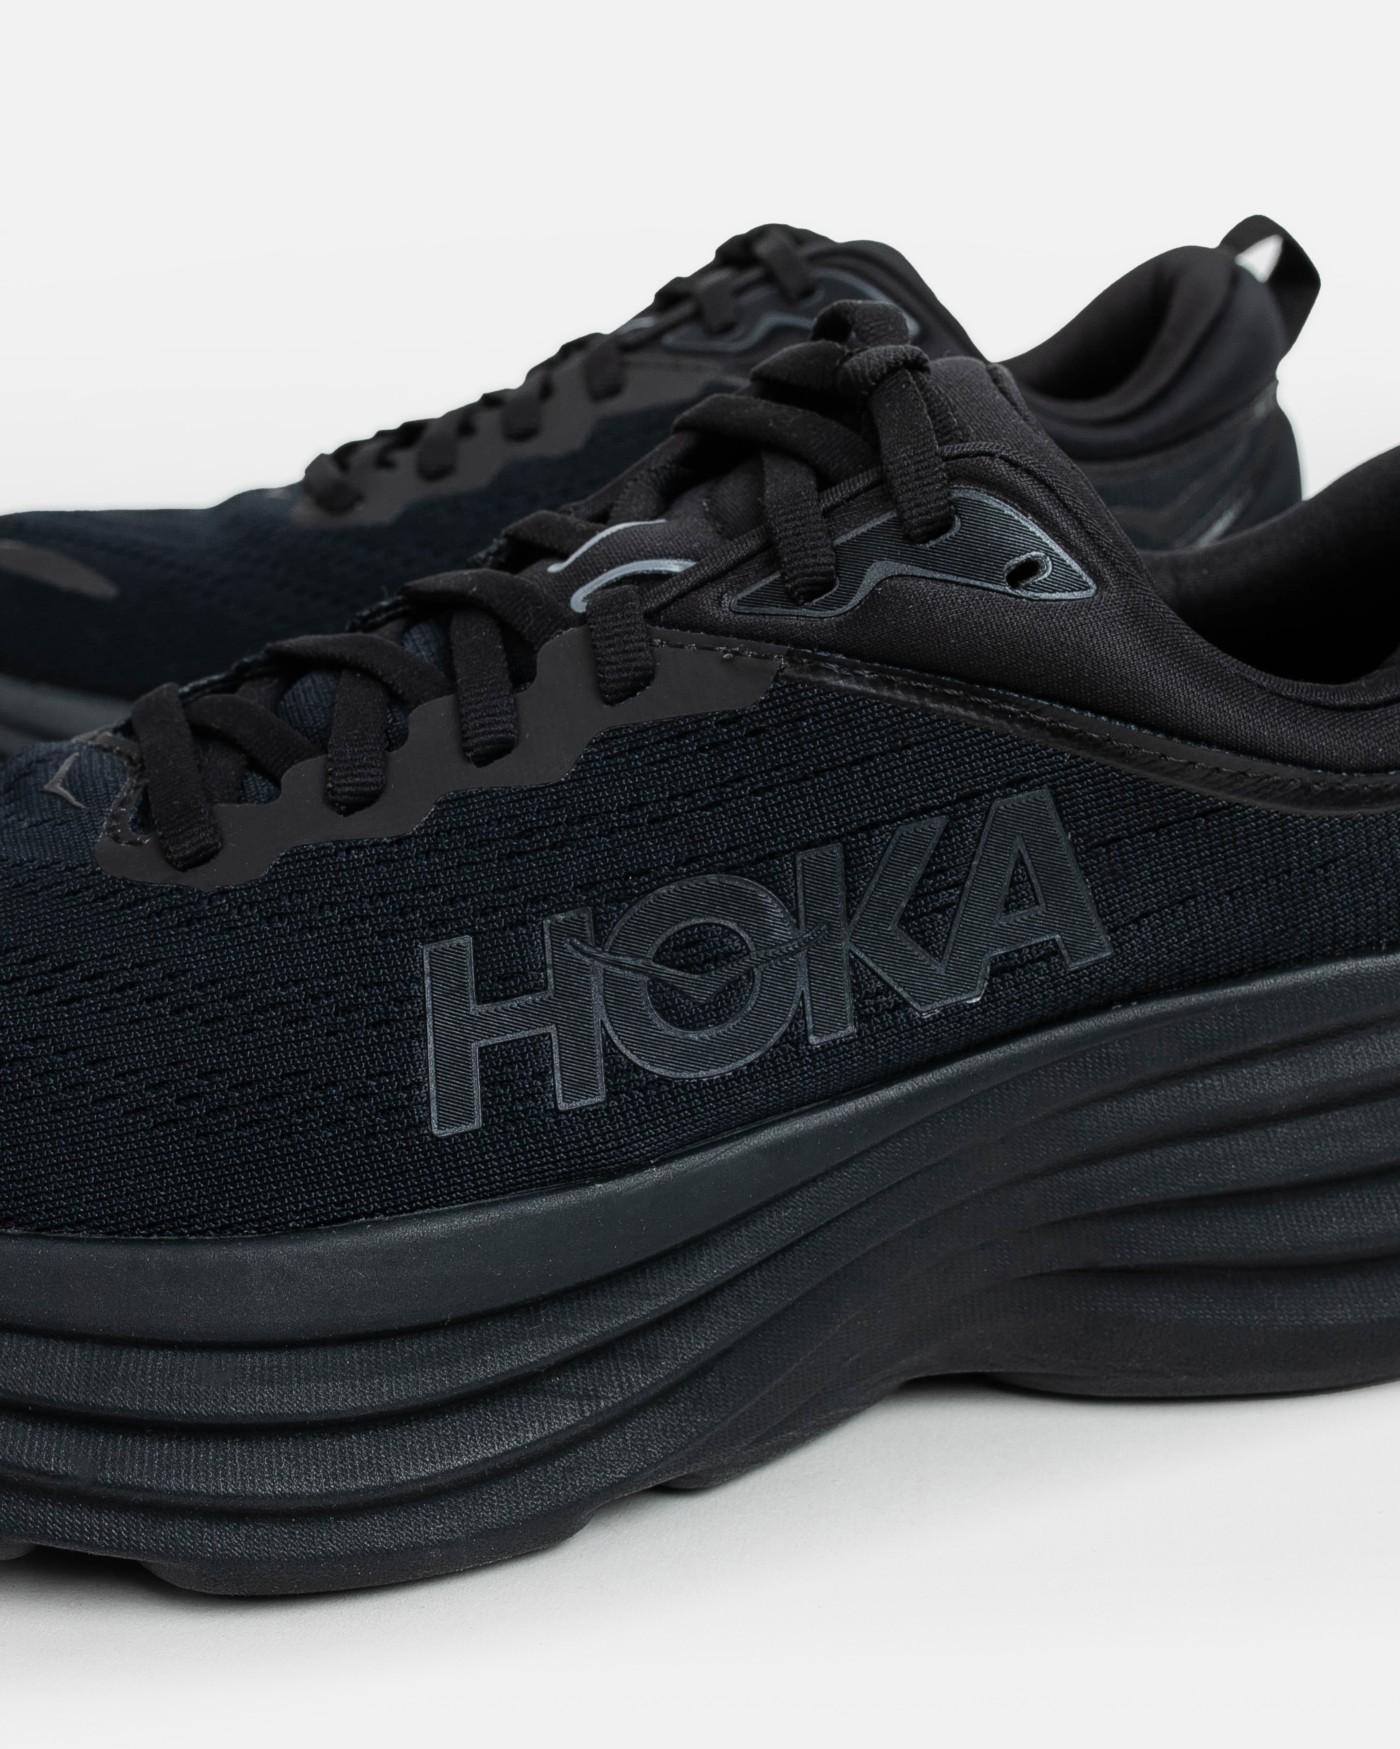 Hoka - Zapatillas para Hombre Negras - Bondi 8